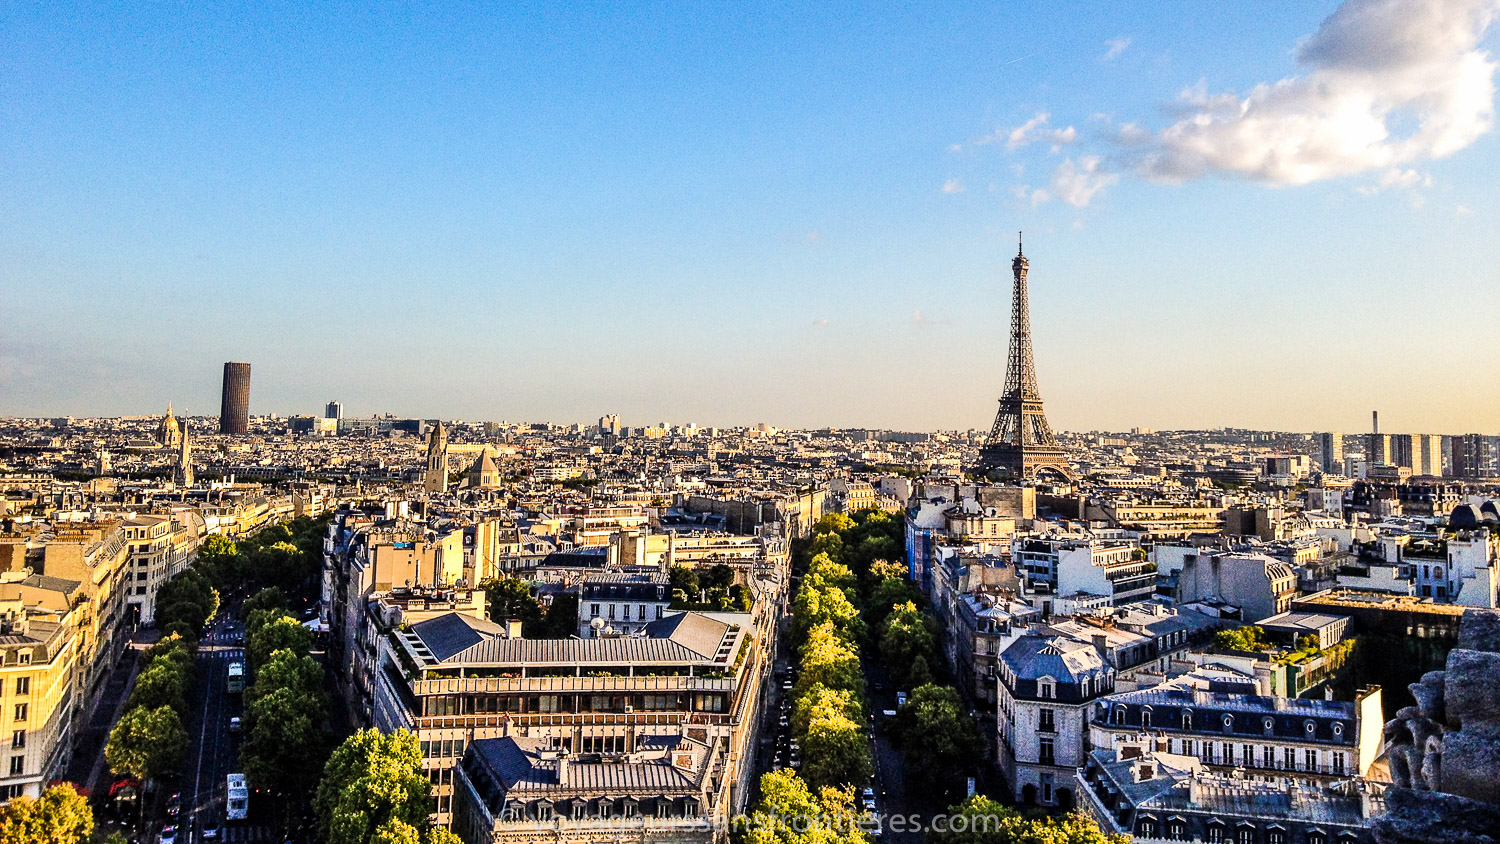 Vue sur la Tour Eiffel depuis l'Arc de Triomphe - Paris, France